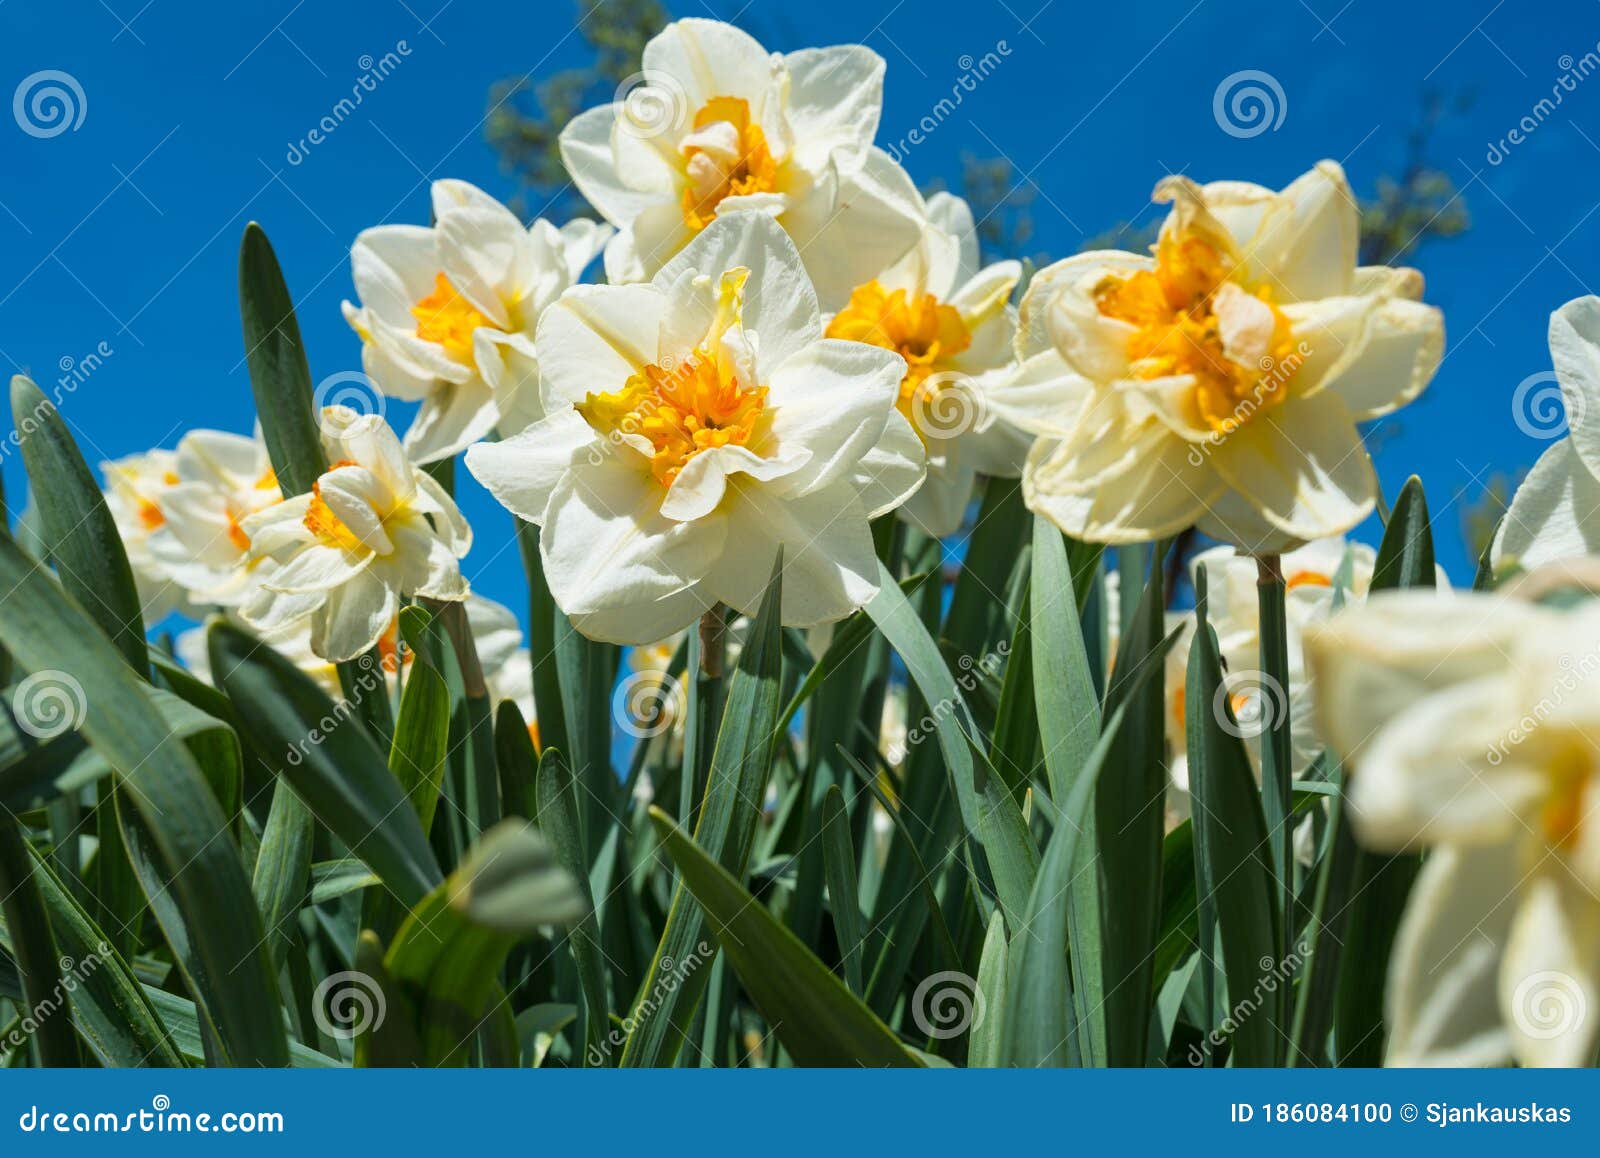 Fleurs De Tazetta De Narcisse De Jonquilles Sur Fond De Nature De Ciel Bleu  Photo stock - Image du ornemental, blanc: 186084100